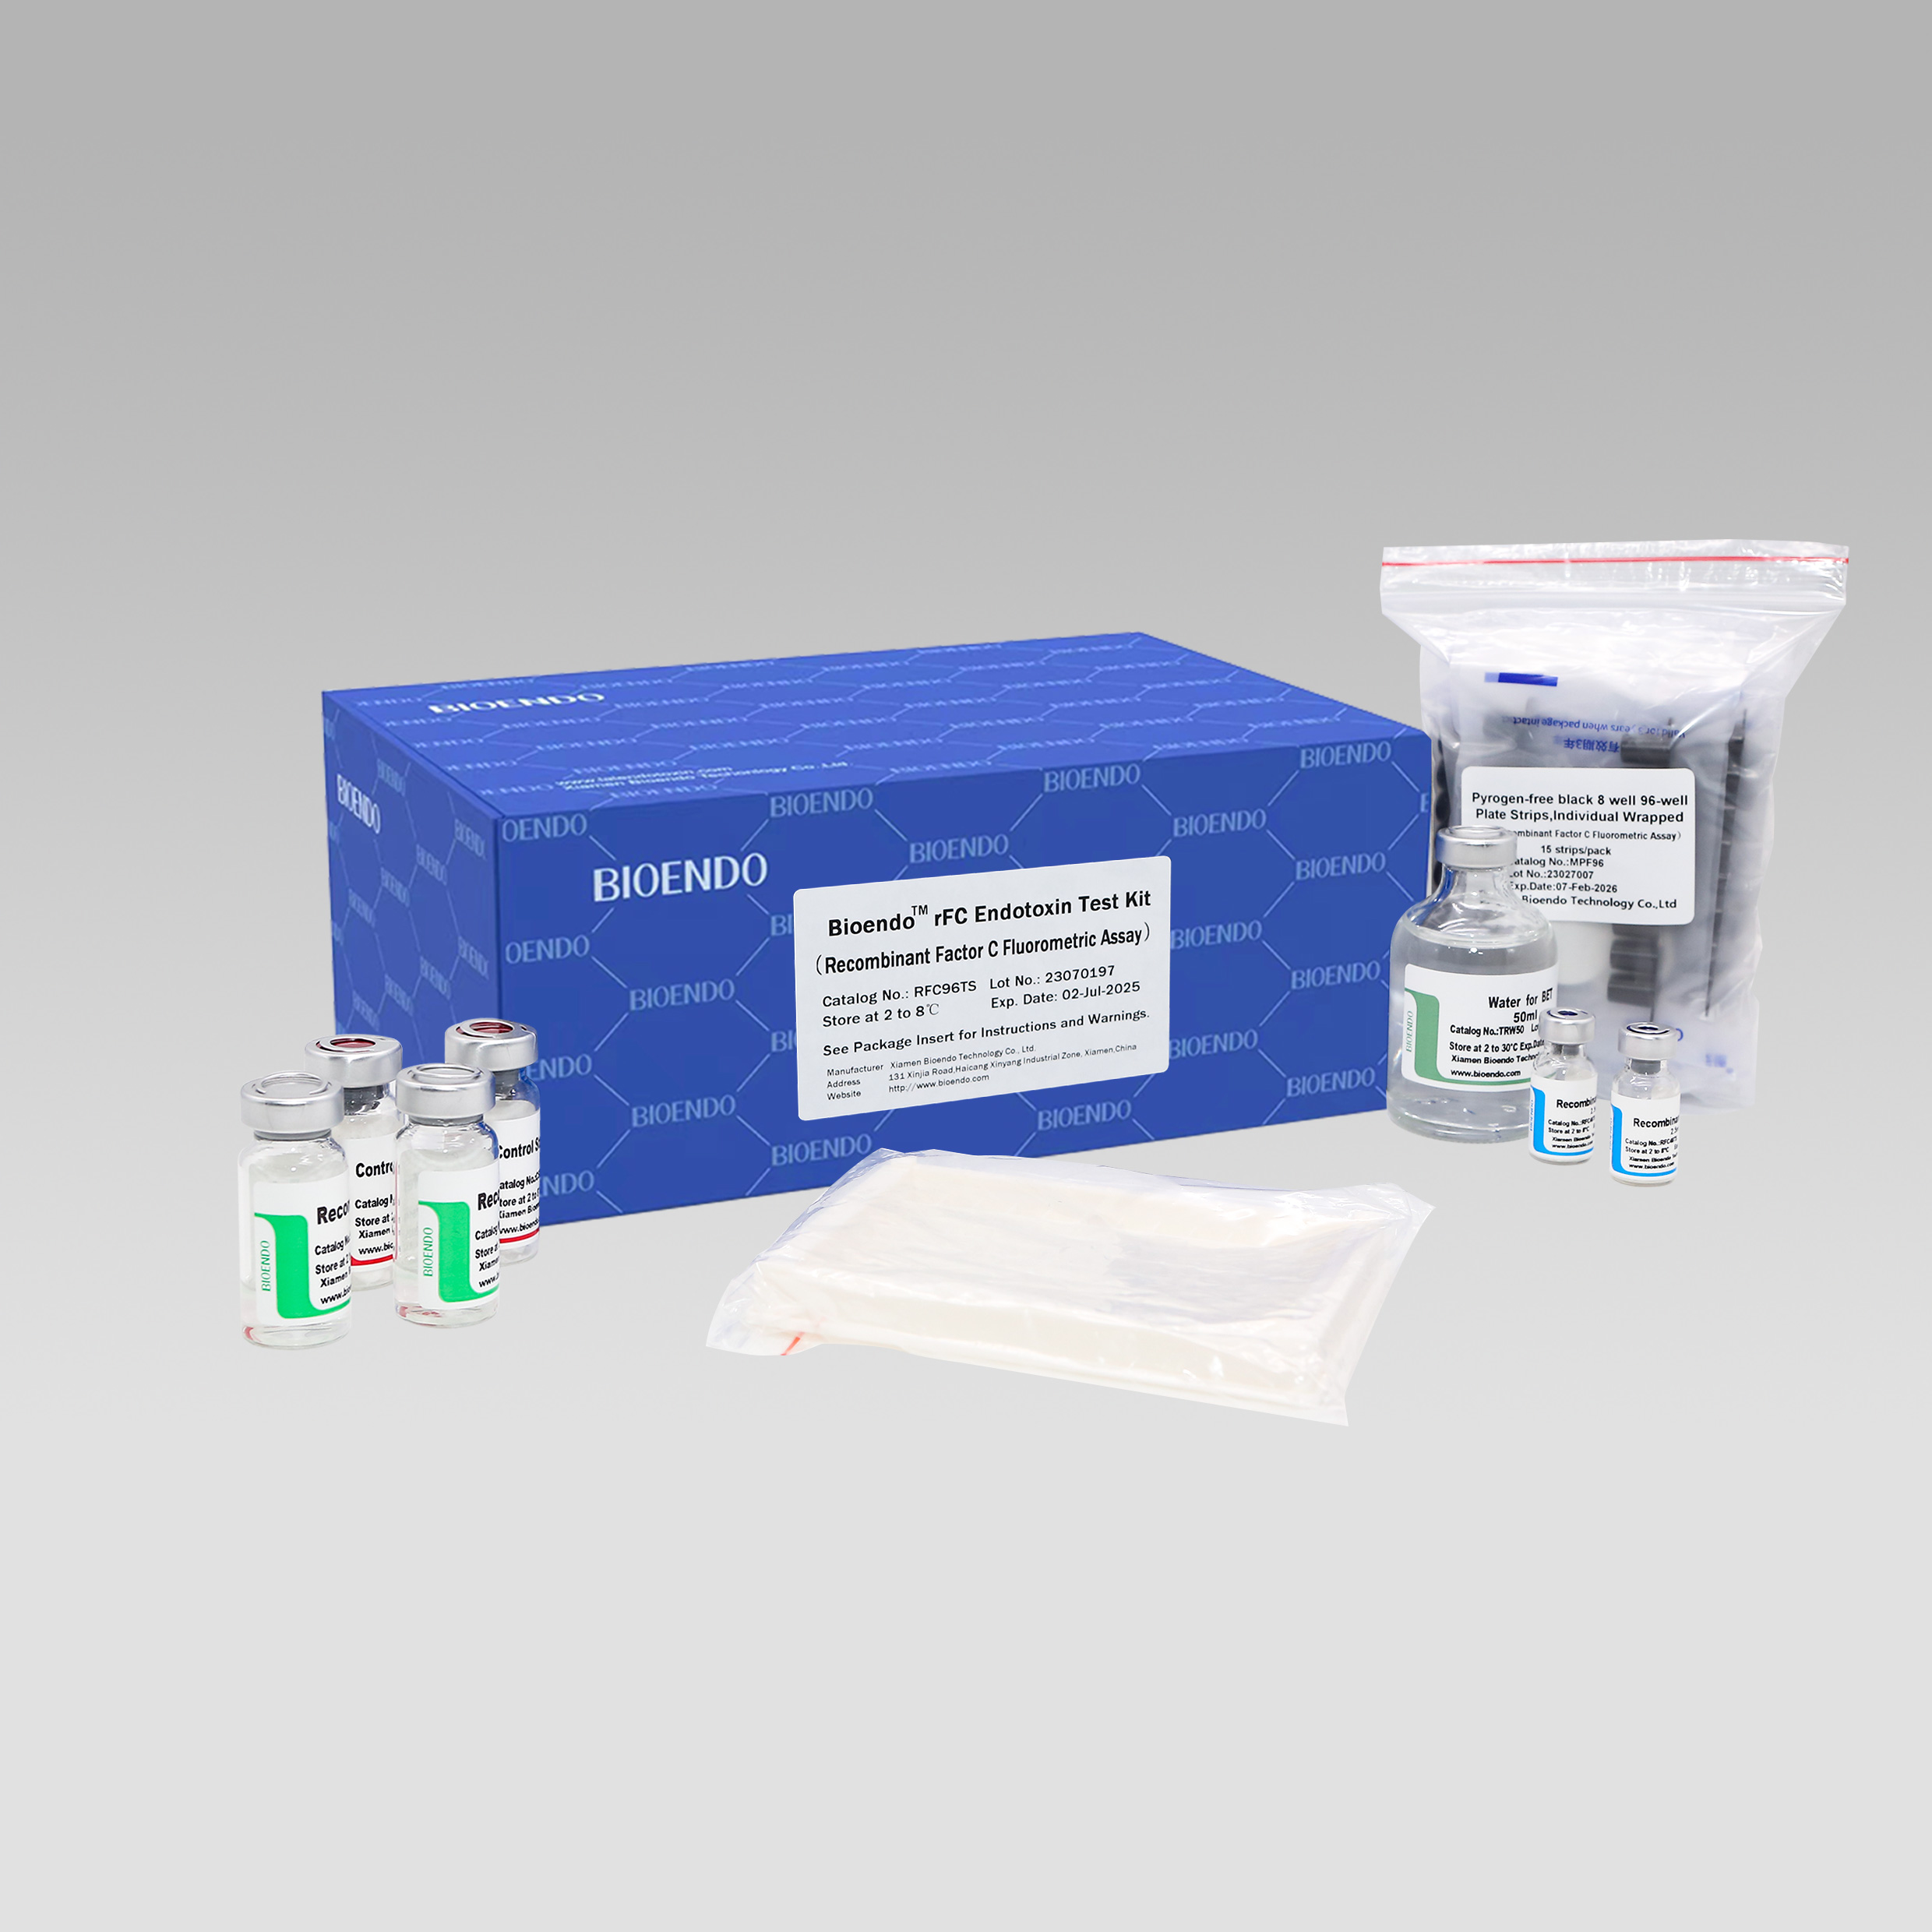 Bioendo™ rFC Endotoxin Test Kit (C Faktore Birkonbinatzailea Saiakuntza Fluorimetrikoa)